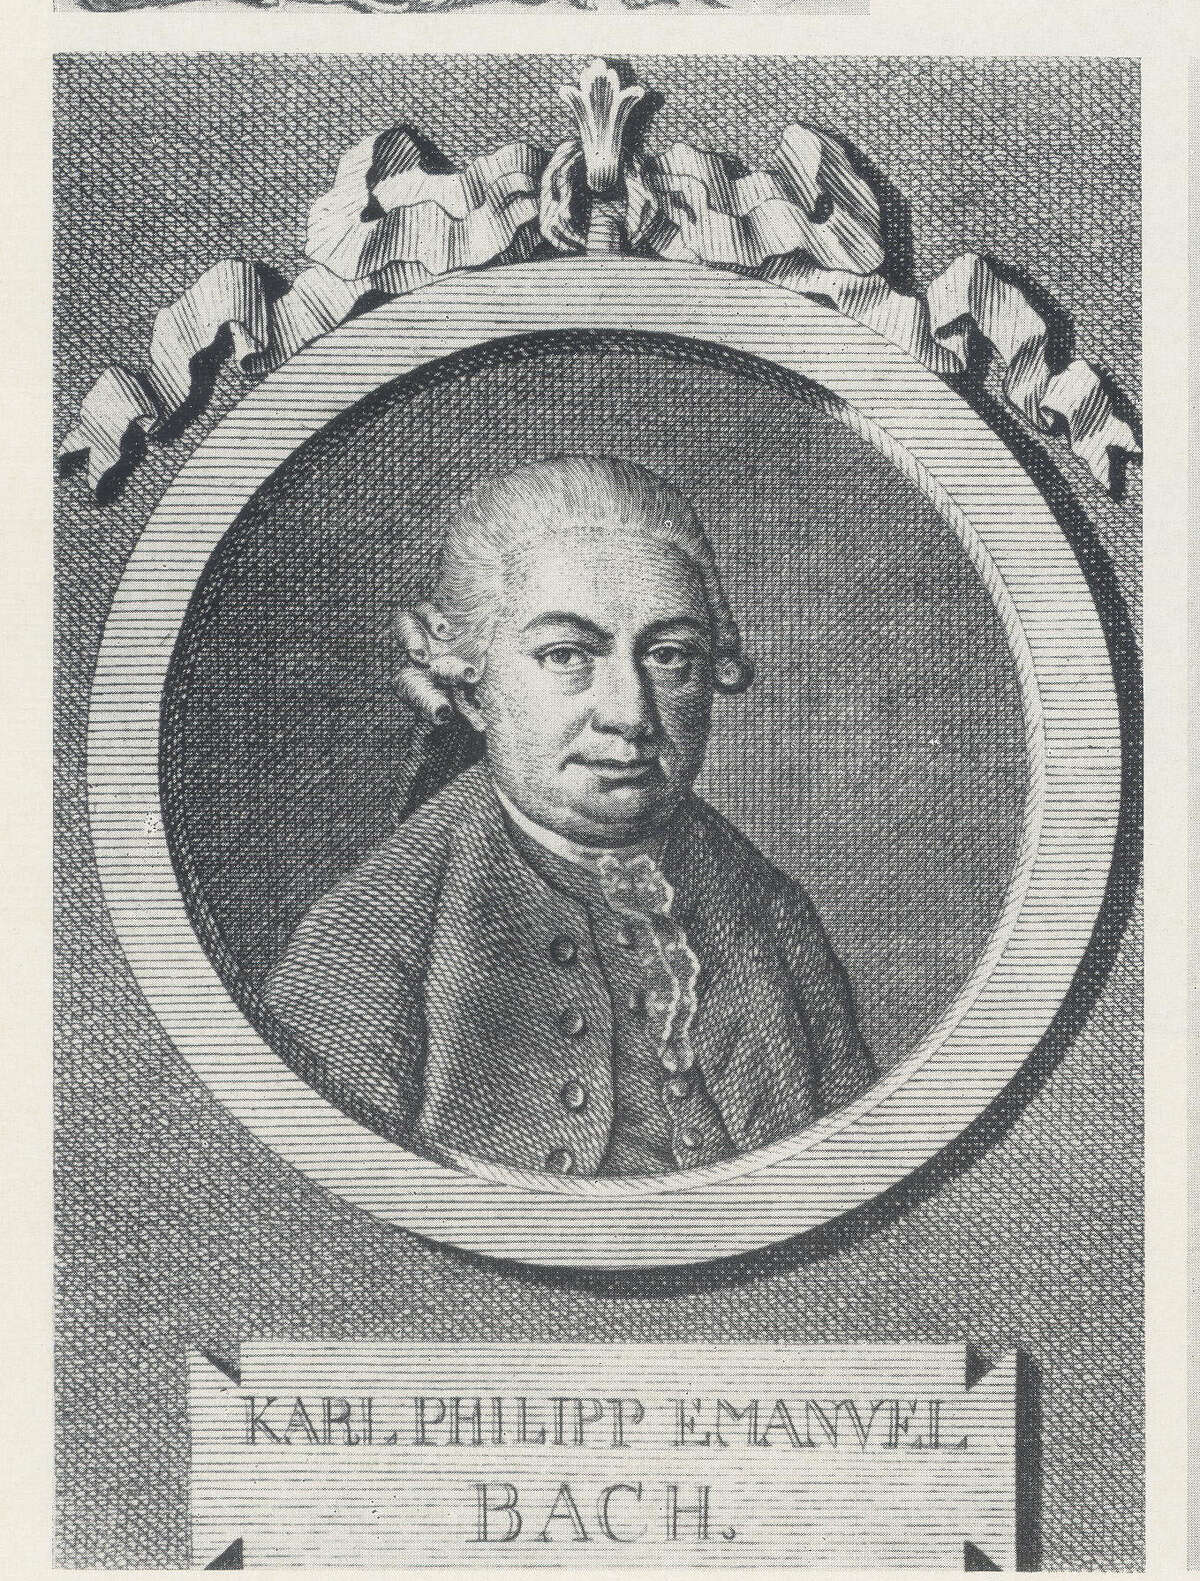 Wilhelm Friedemann Bach was J.S. Bach's second child and eldest son.